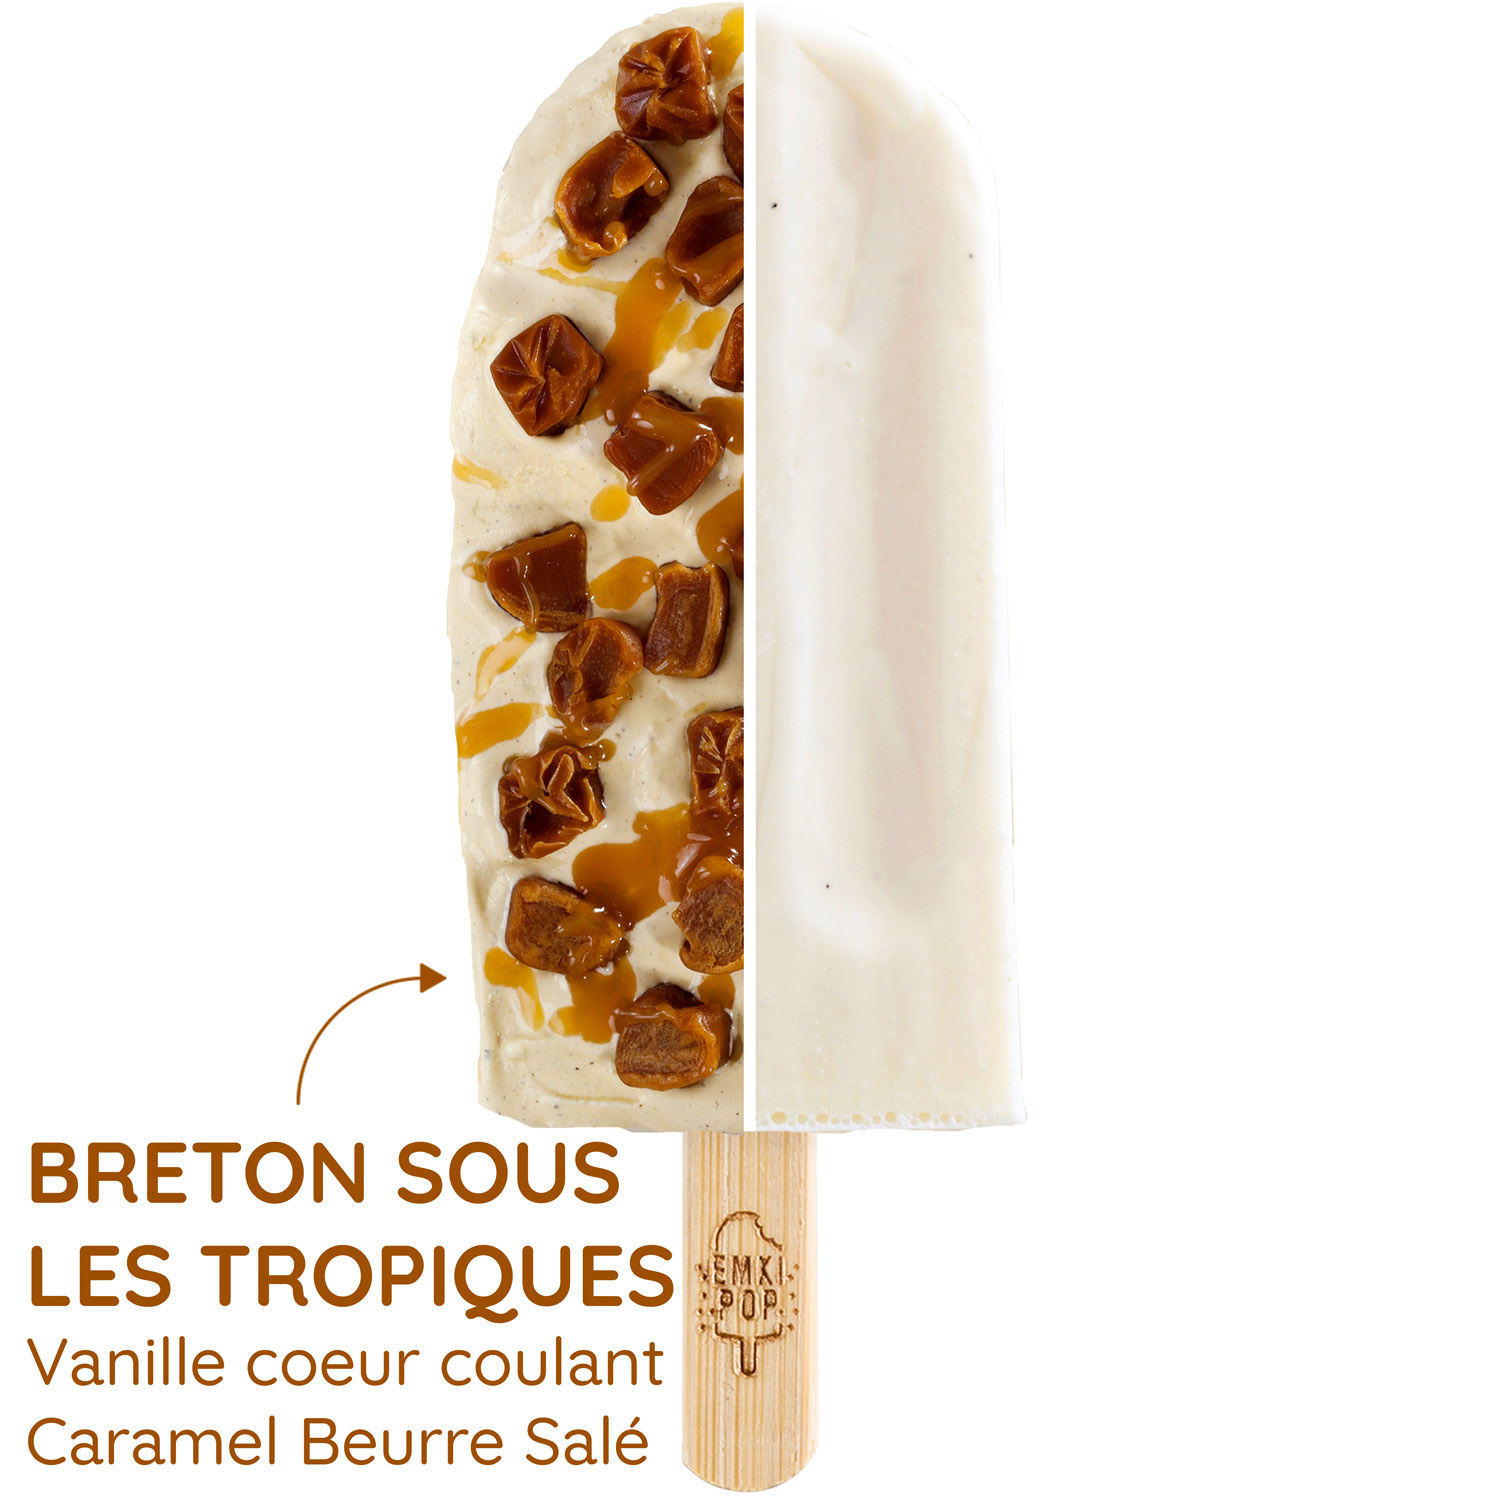 Breton sous les Tropiques - Vanille coeur coulant Caramel Beurre Salé | Glace Artisanale